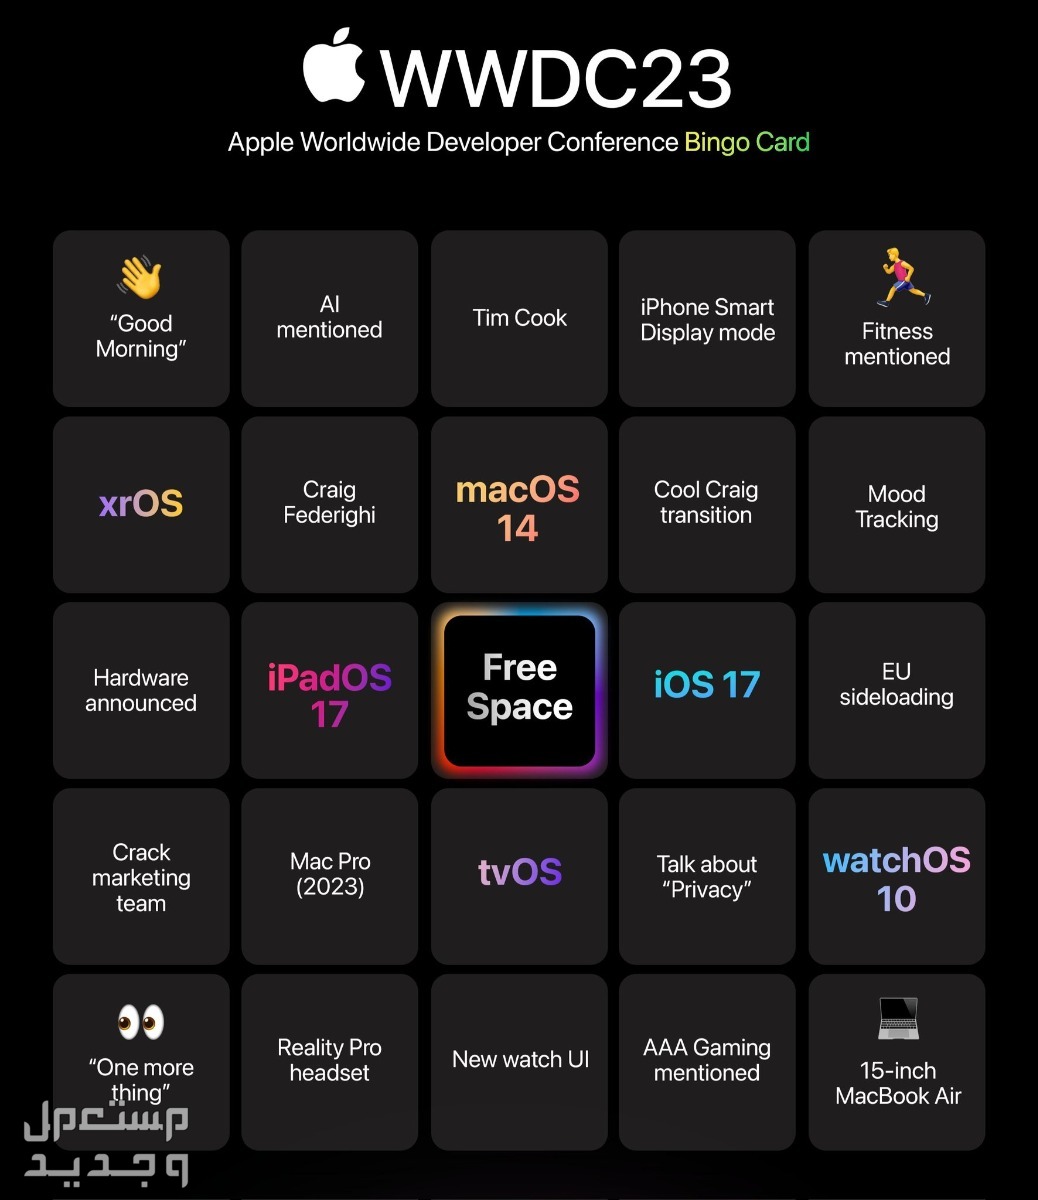 ما الجديد الذي يقدمه نظام ابل الجديد iOS 17 في سوريا